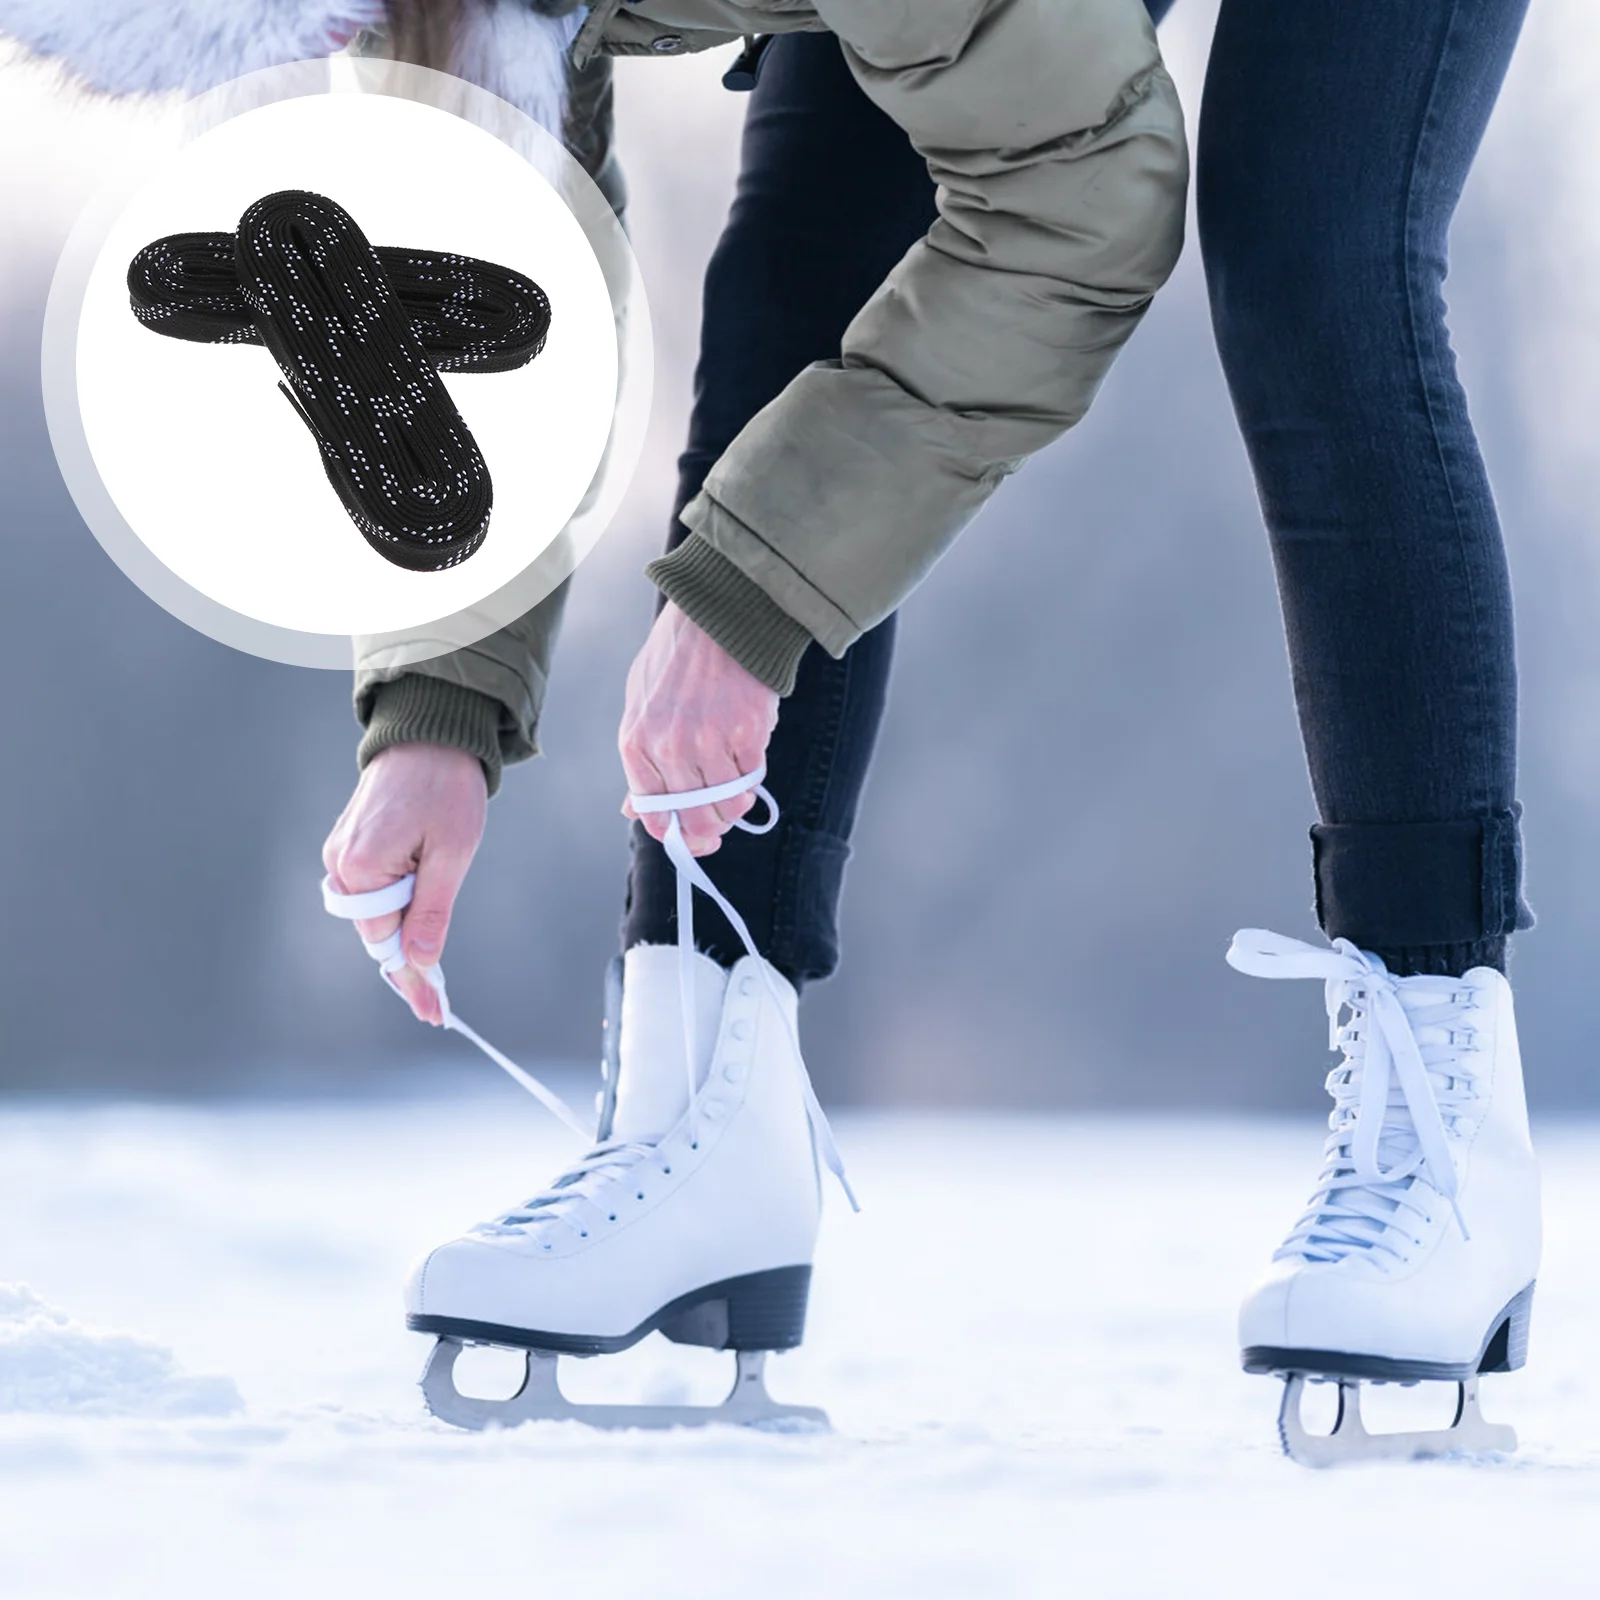 

Профессиональные шнурки для обуви, вощеные шнурки, защита от замораживания и излома, для занятий спортом, лыжами, хоккеем